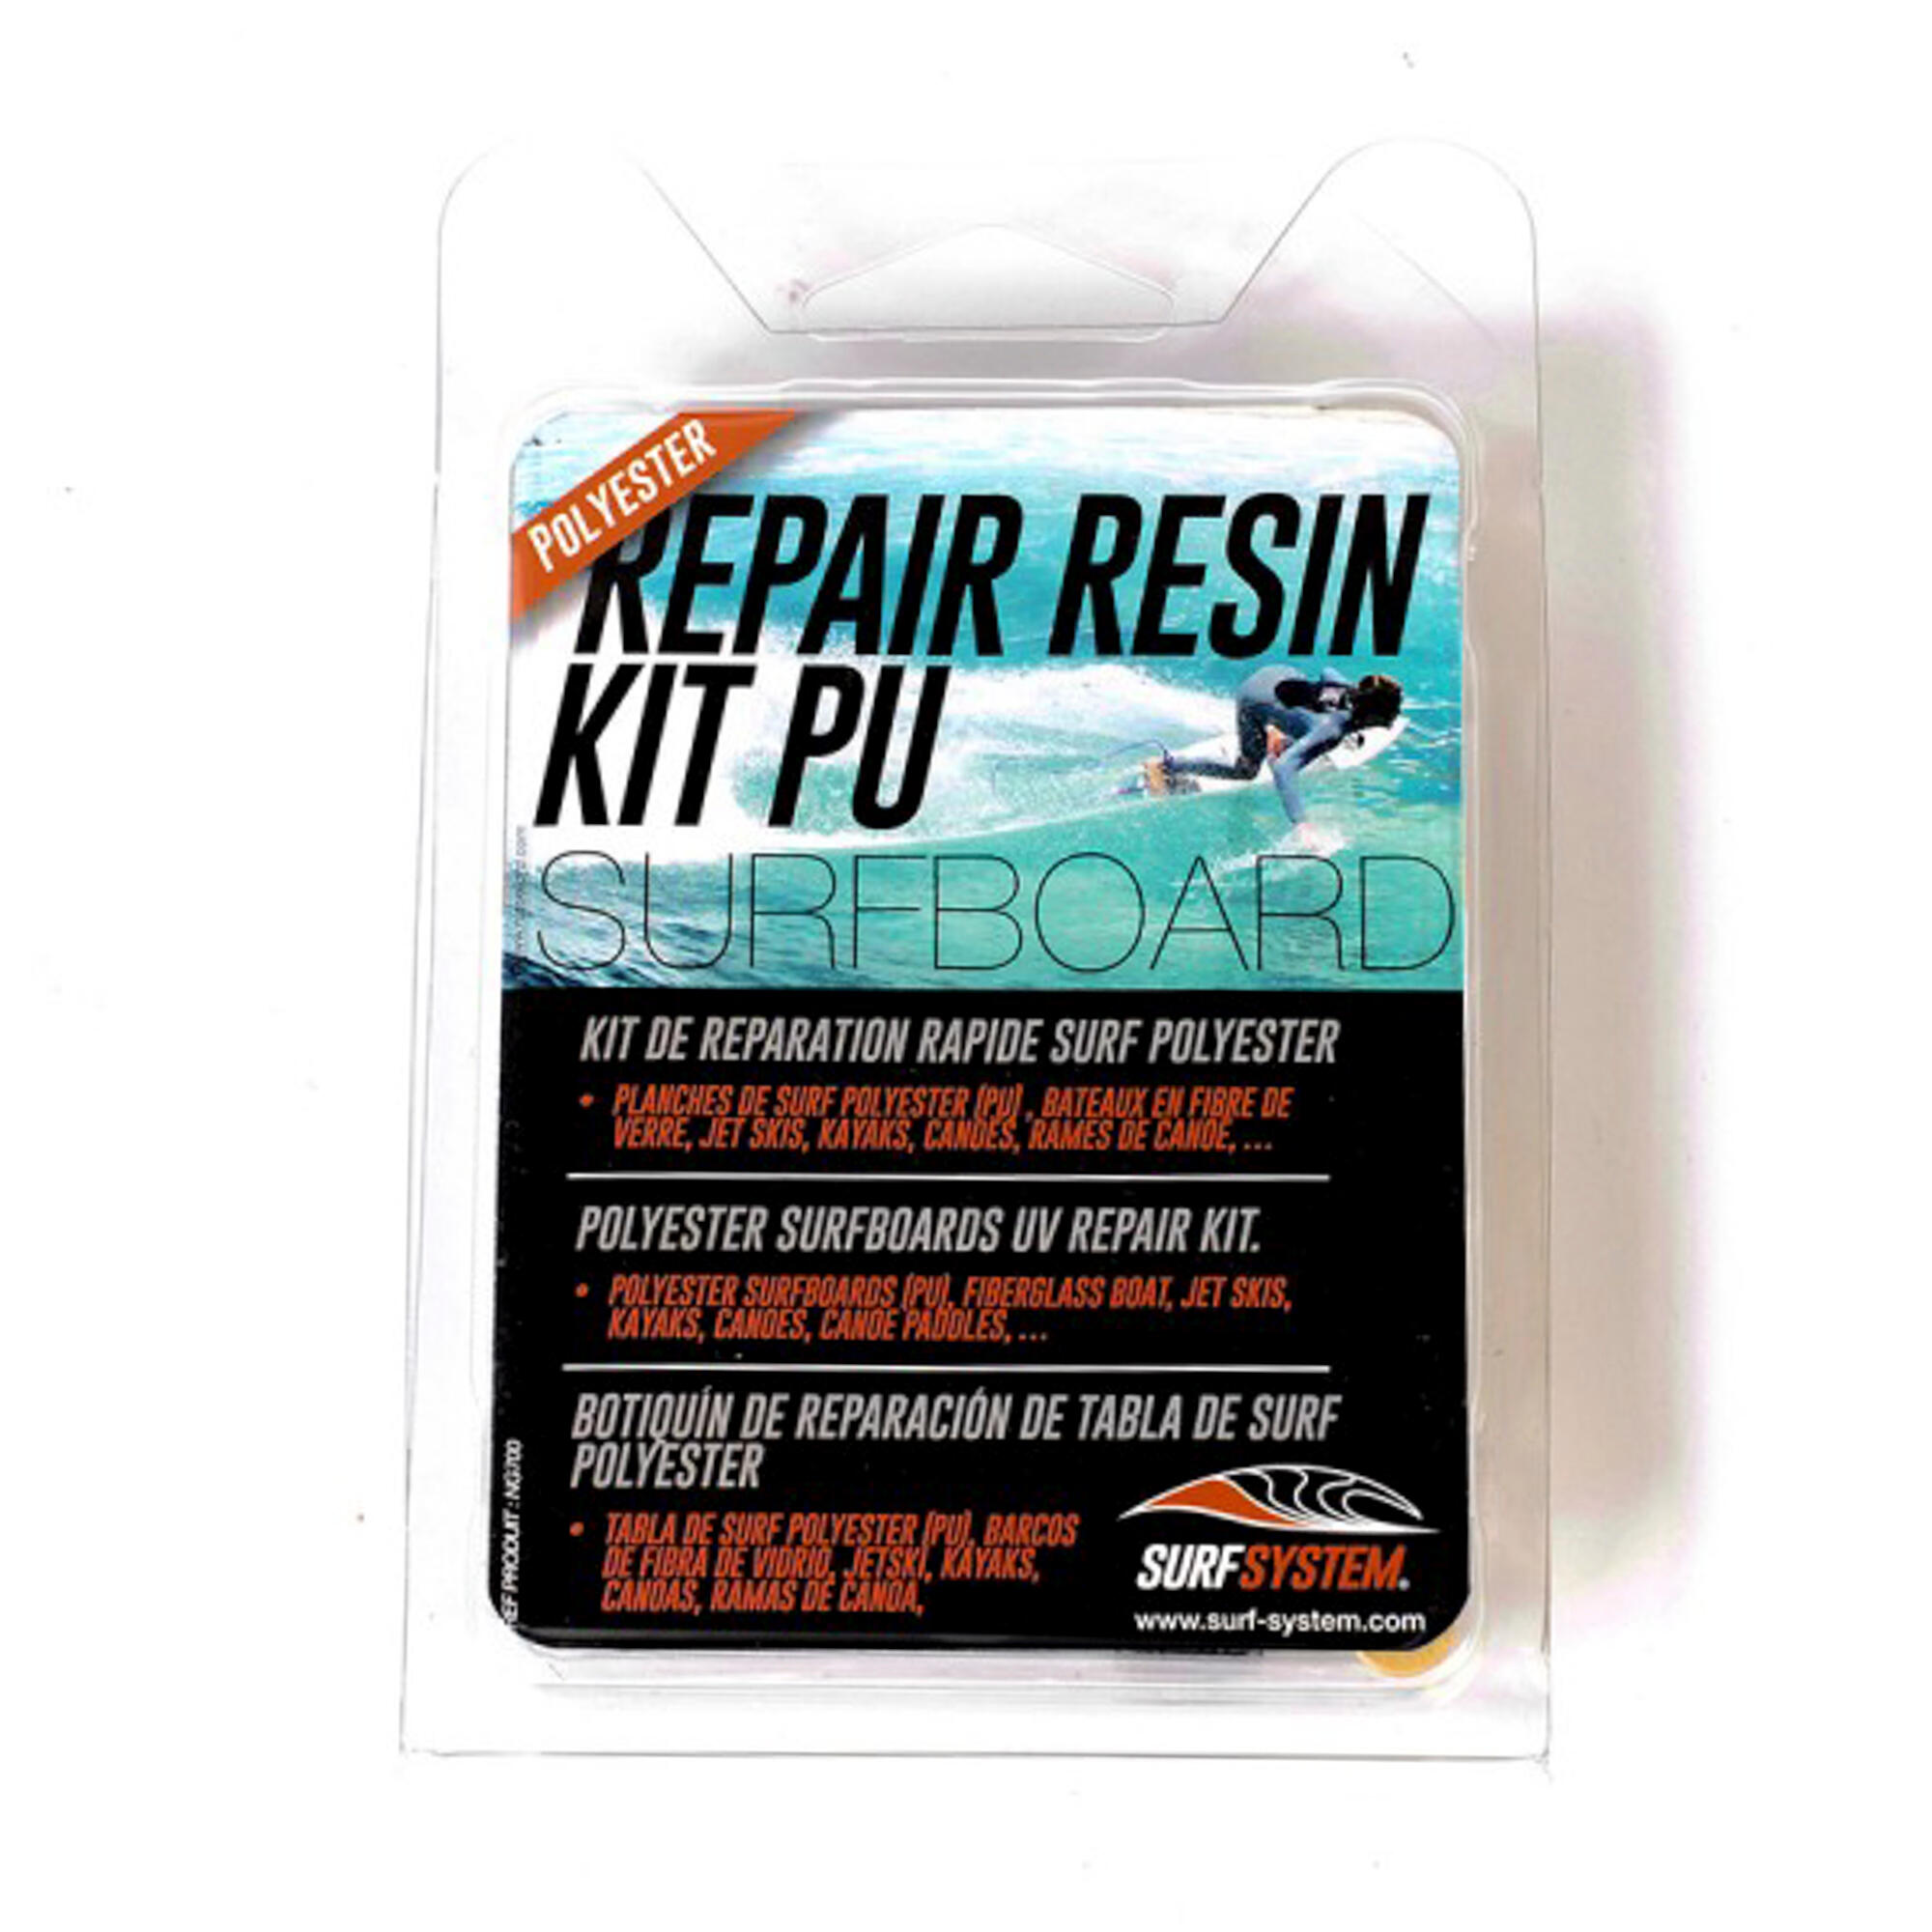 Repair Kit for Polyester Resin Surfboard. 1/2